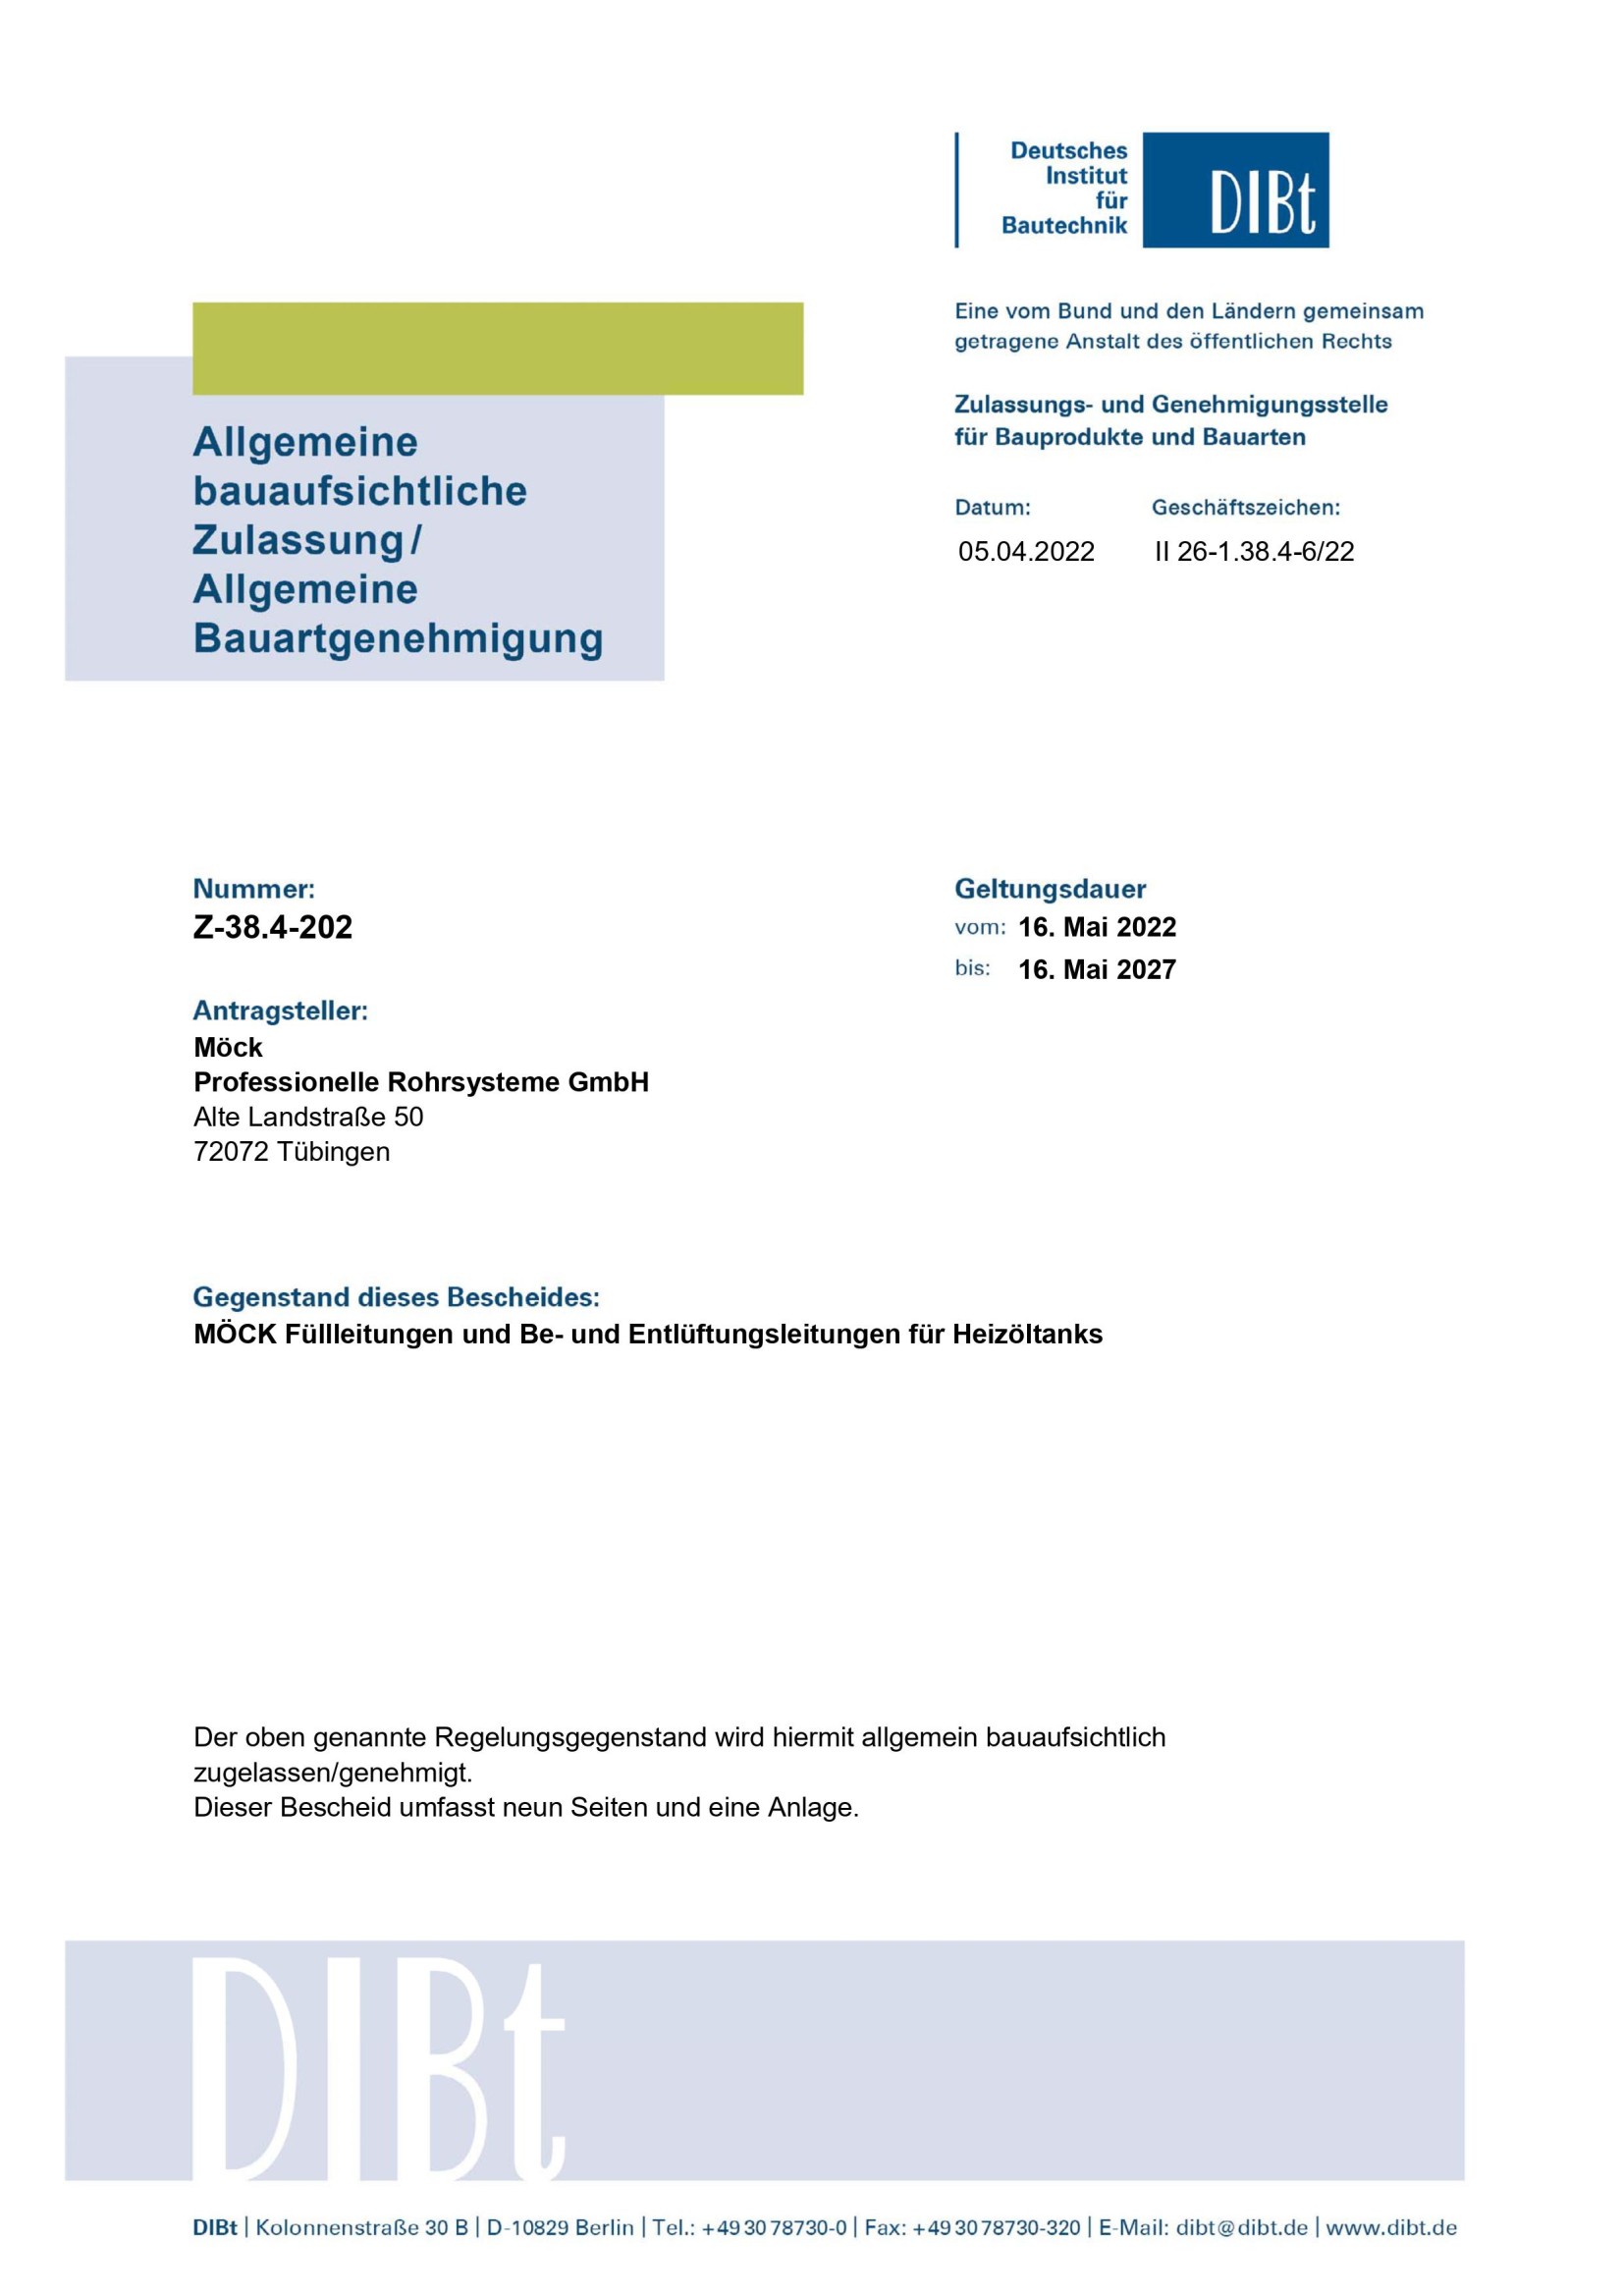 Zulassung TBE 2022 (Deutsch, 05.2022 - 05.2027)